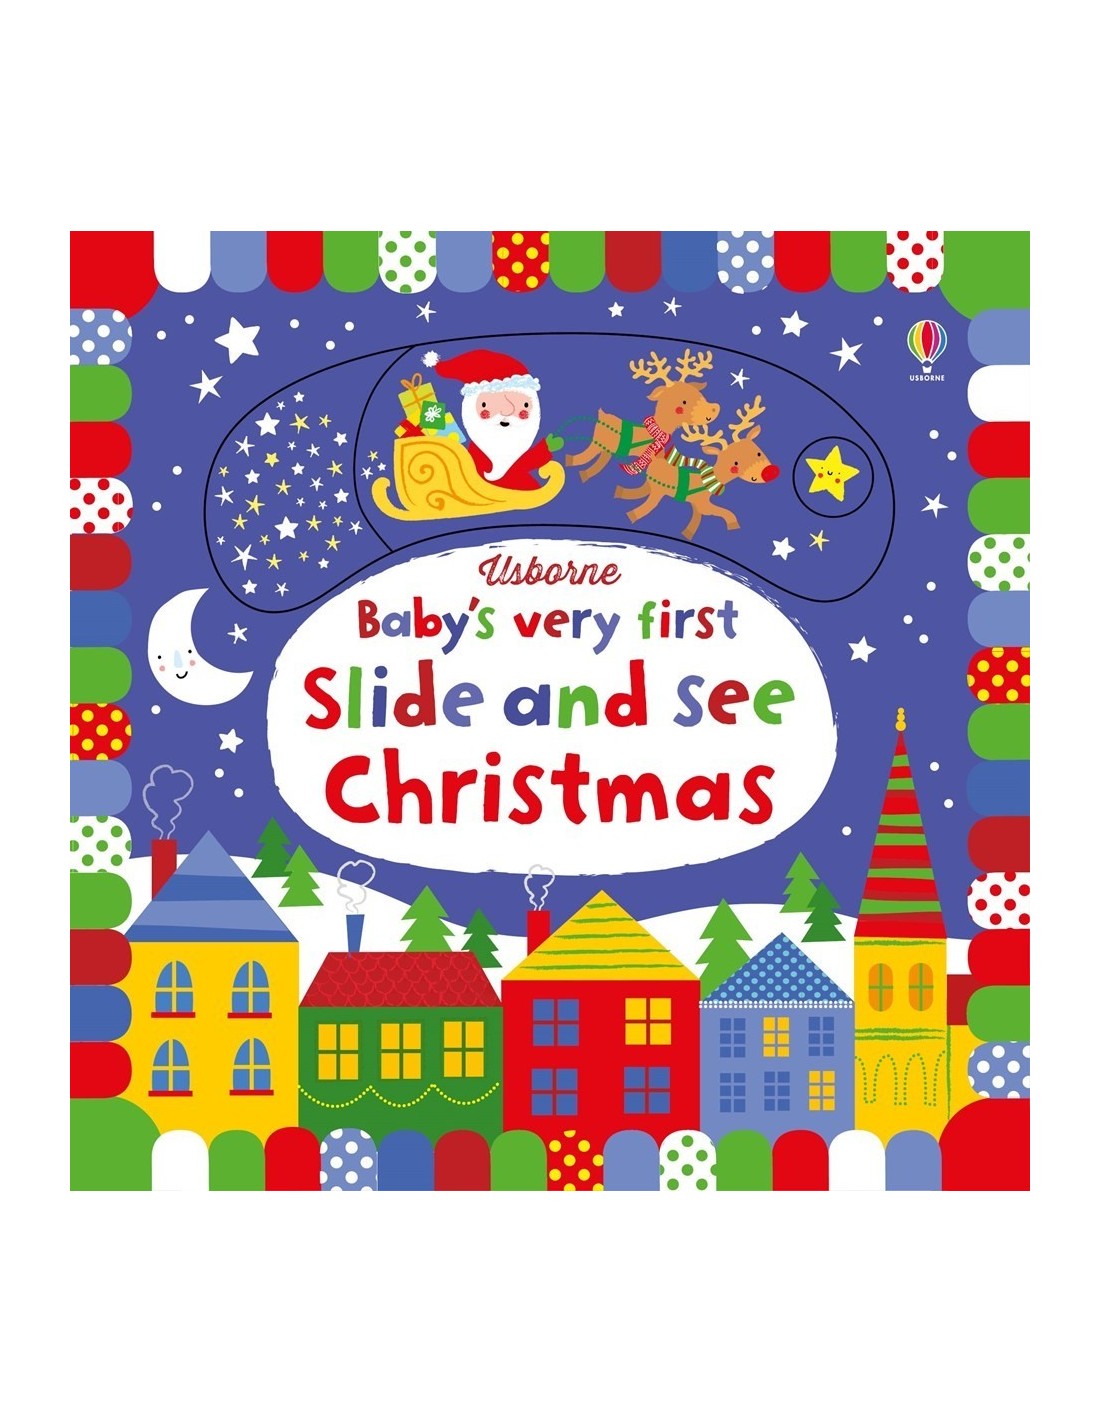 Slide and see Christmas